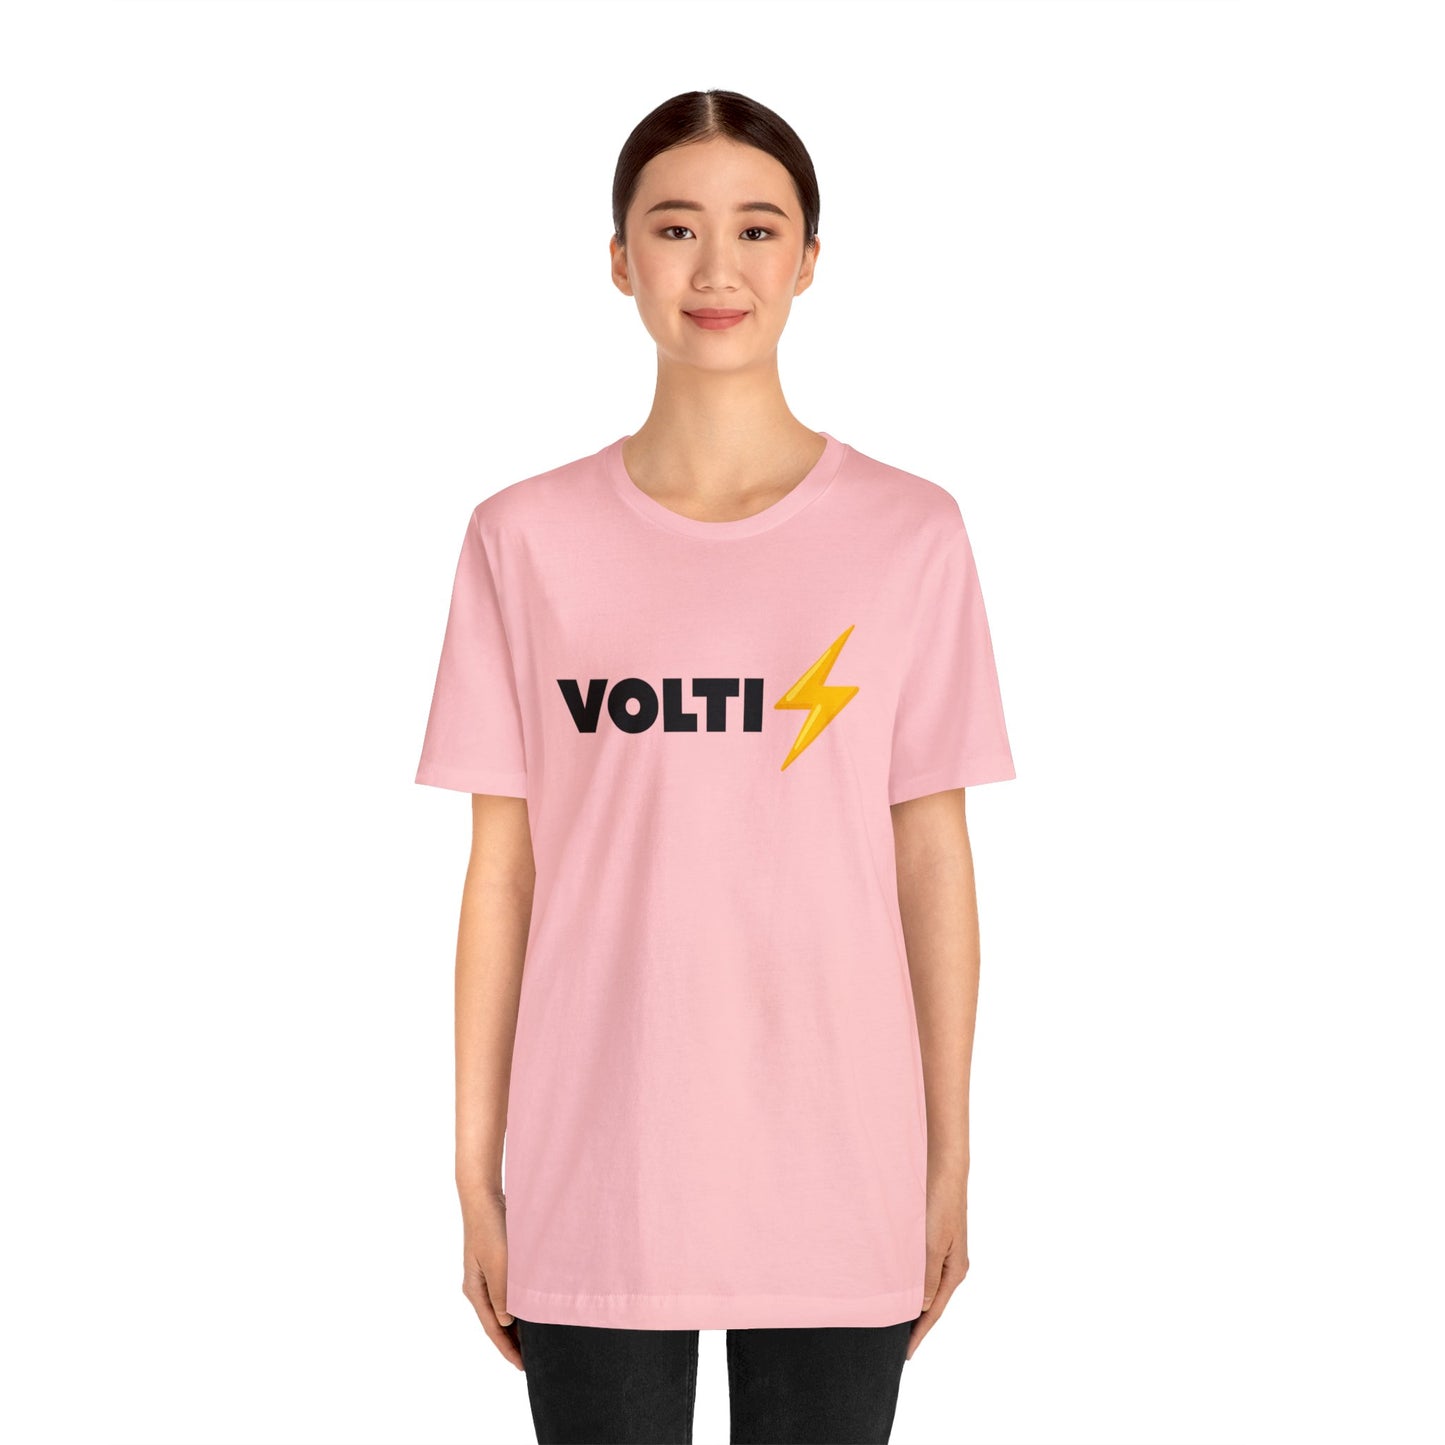 VOLTI – Unisex T-Shirt